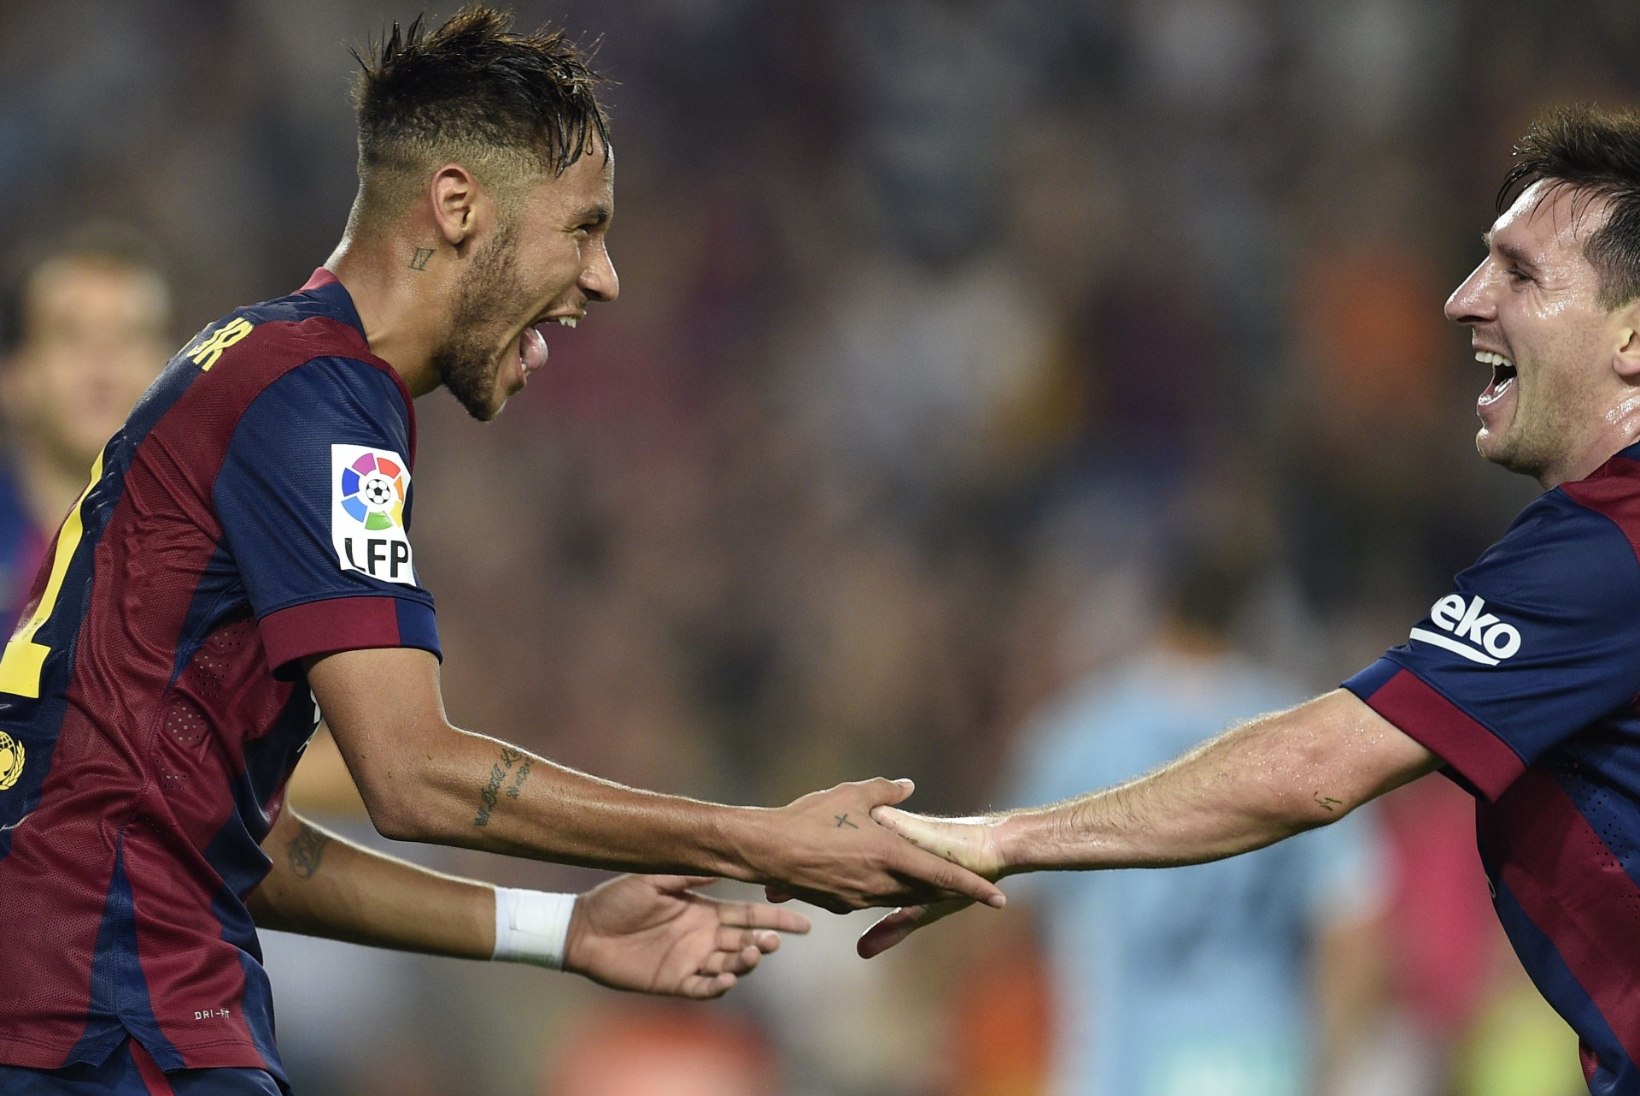 VIDEO | Messi või Neymar - kumb suudab rohkem energiat toota?